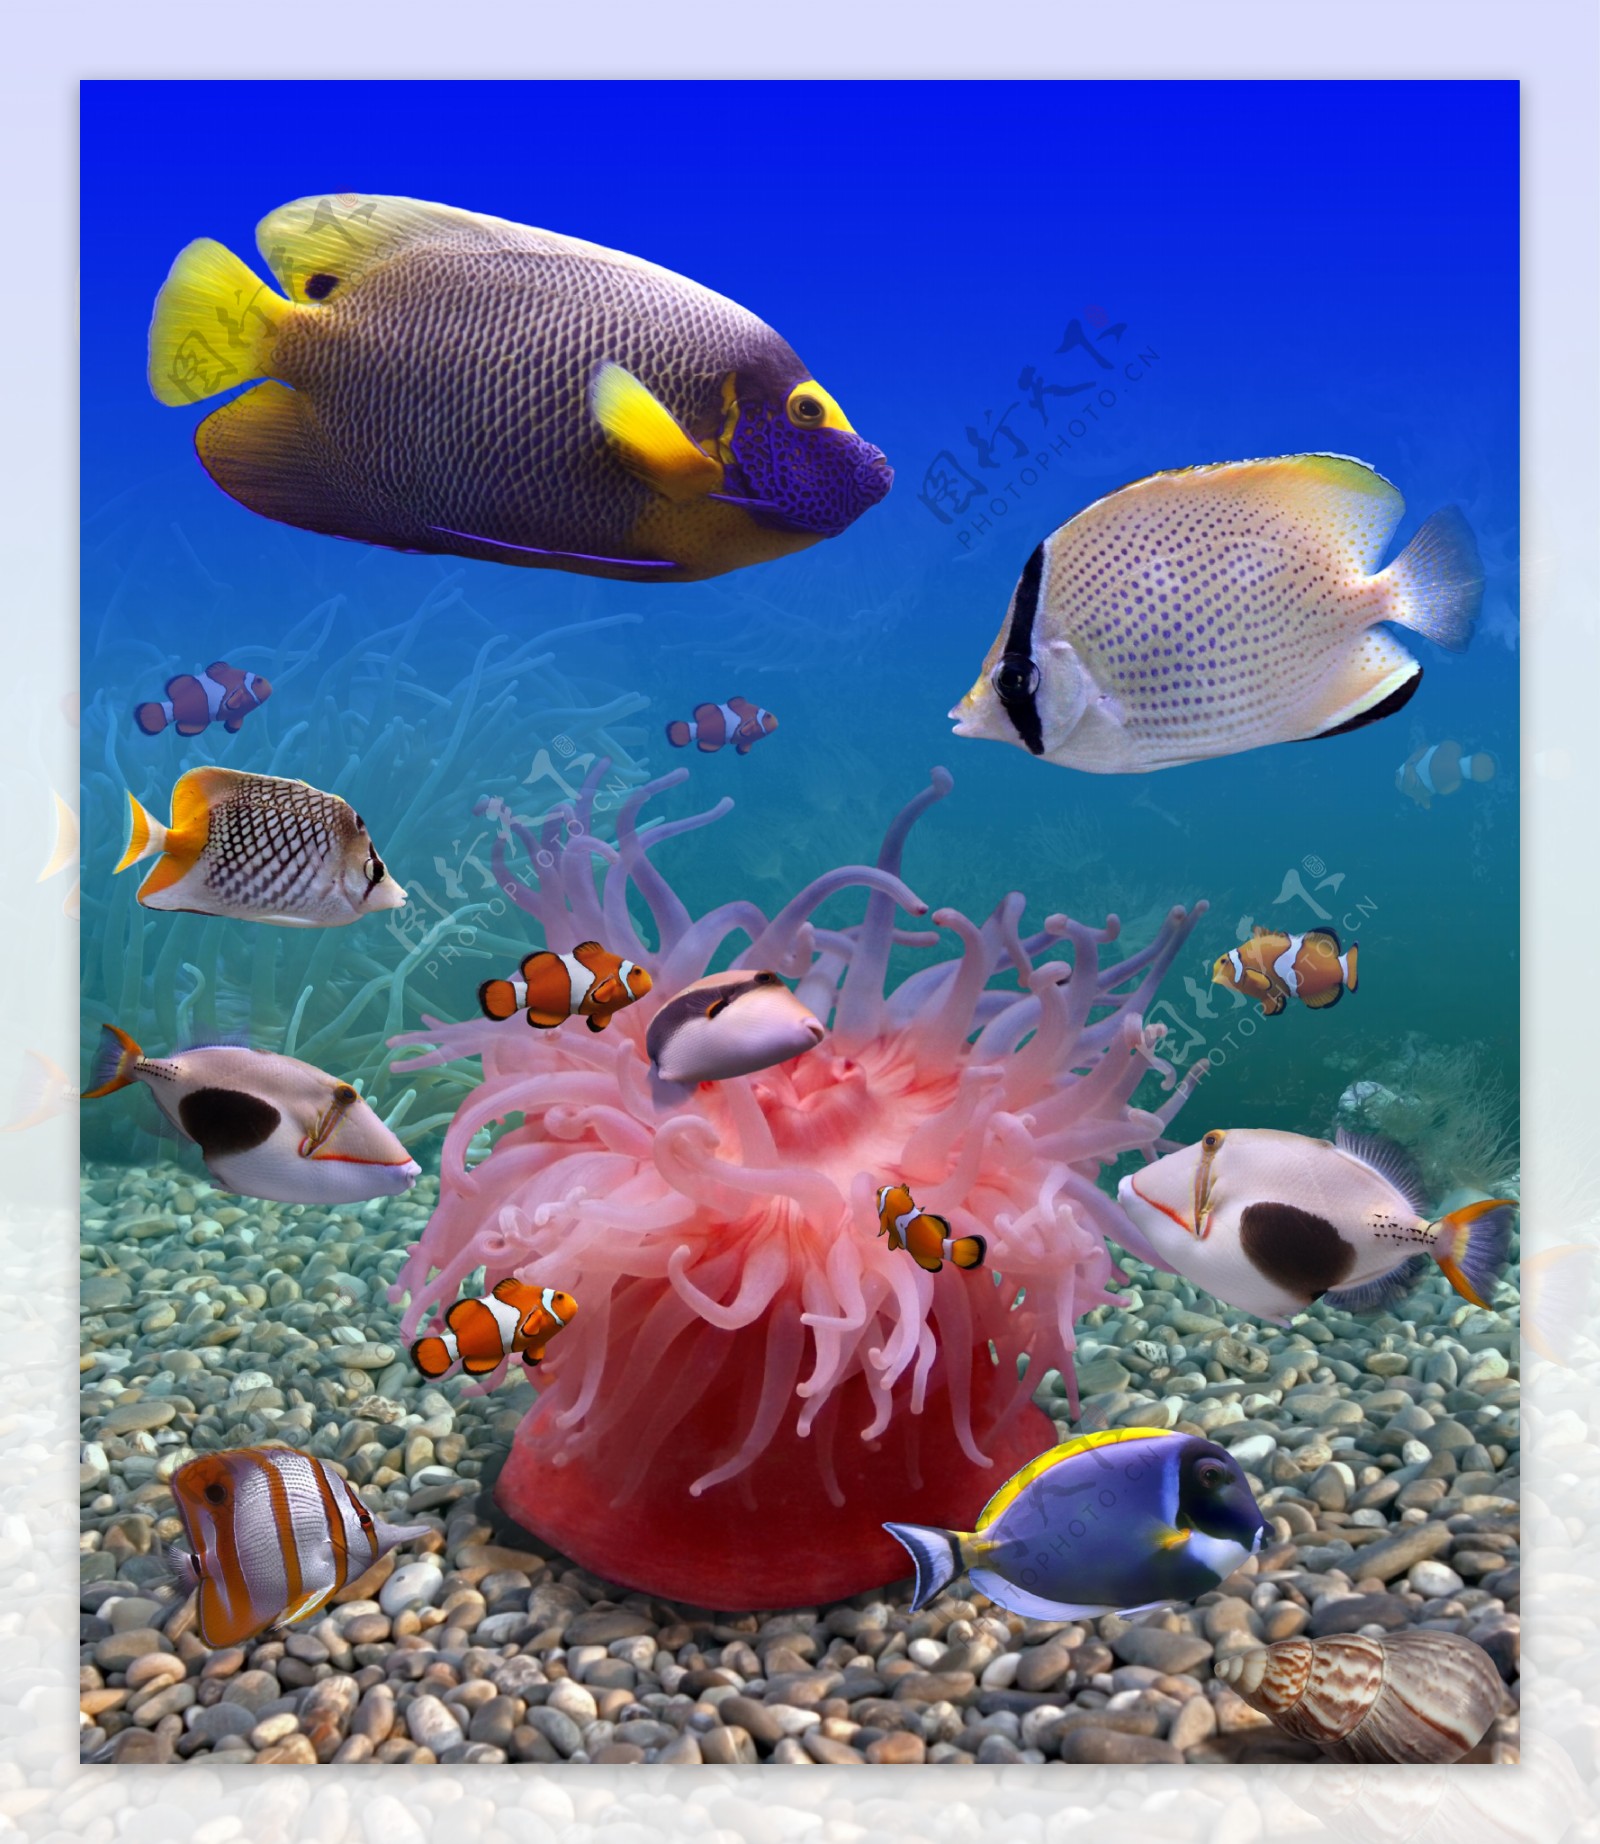 海底海鱼和石头图片